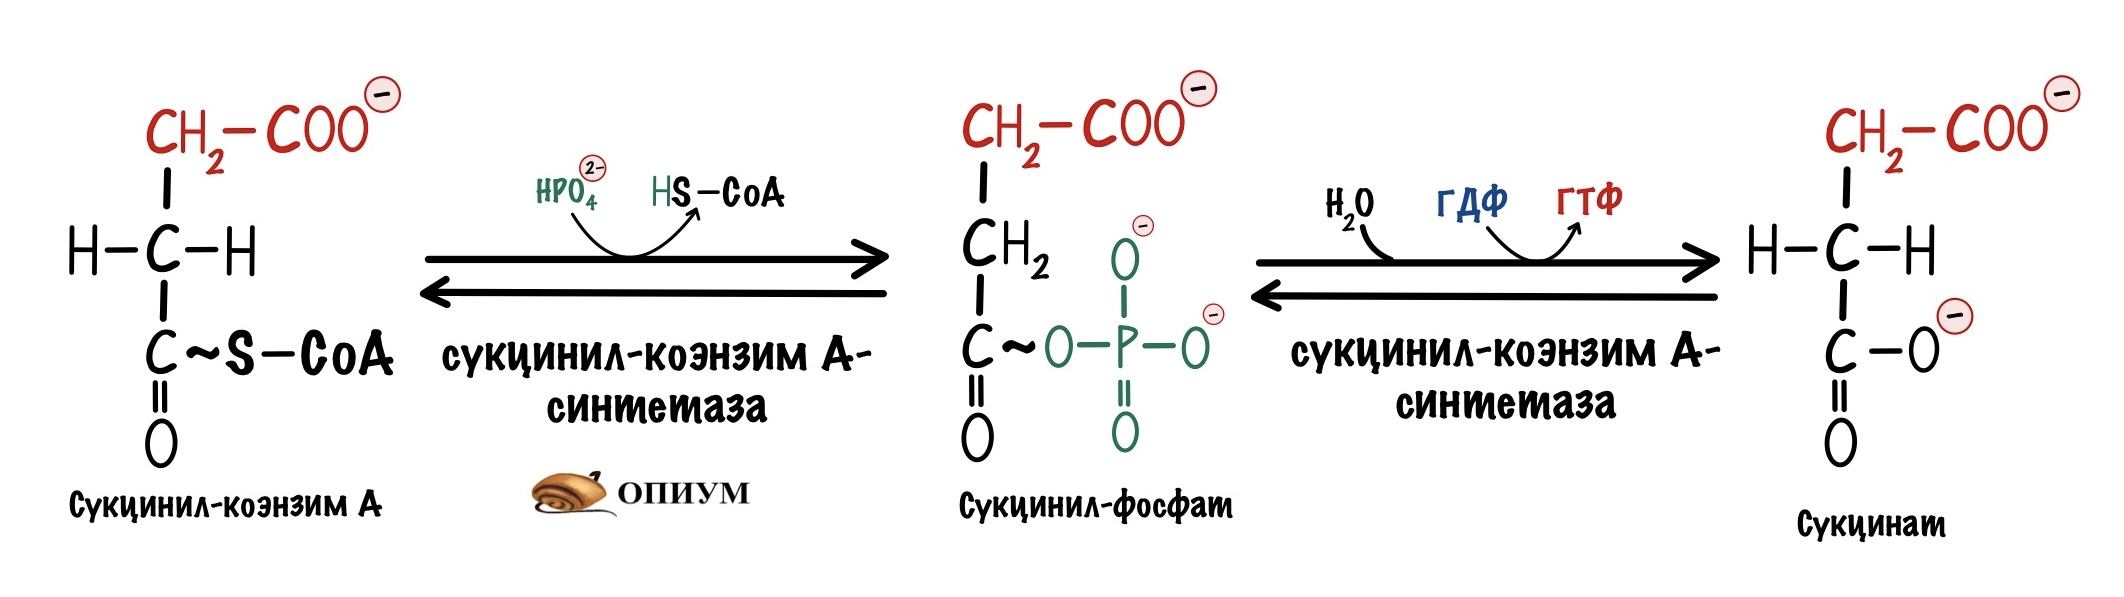 Реакции образования циклов. Реакция образования сукцината. 5 Реакция цикла Кребса. Окислительное декарбоксилирование пирувата и цикл Кребса. Пятая реакция ЦТК.